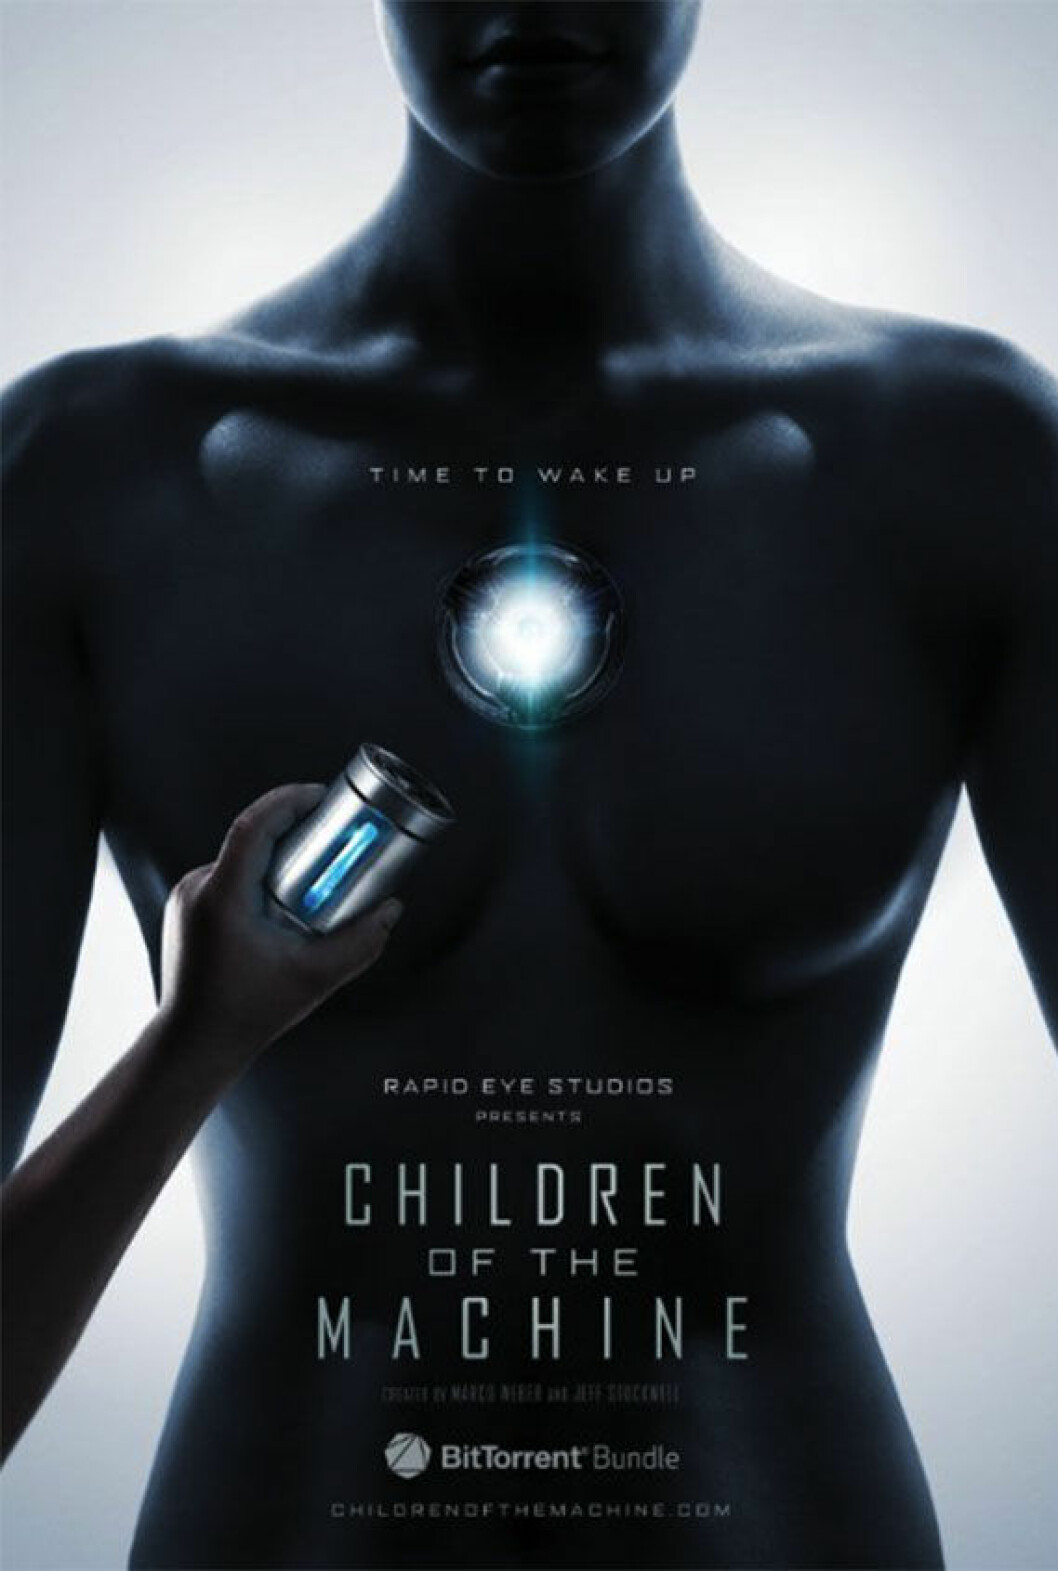 FØRSTE: Children of the Machines blir Bittorrents første serie (Skjermdump: Adweek.com)